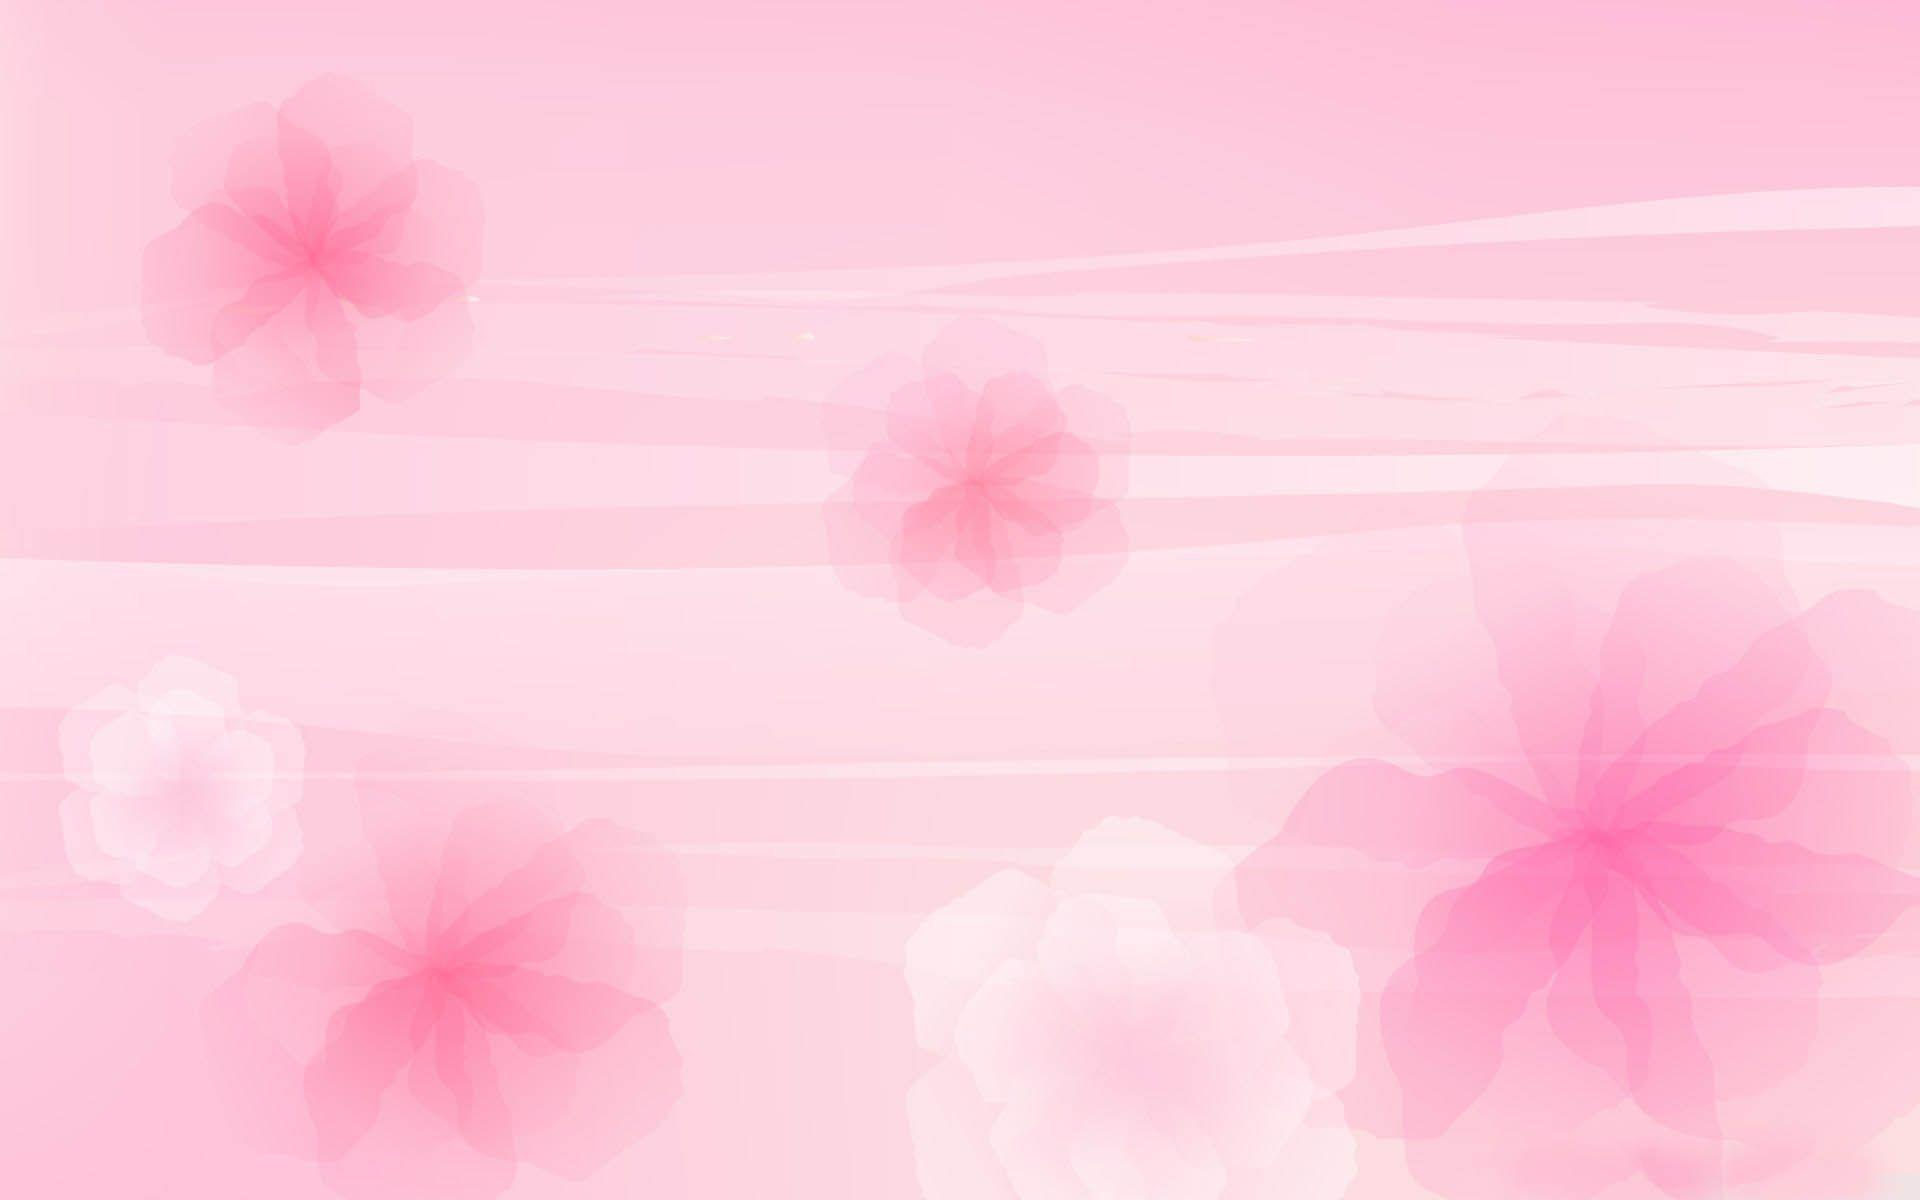 Hoa màu hồng nhạt trong hình ảnh sẽ mang đến cho bạn không gian sống thật tươi tắn và tràn đầy niềm vui. Những bông hoa như những nụ cười trong suốt cả ngày dài, chào đón mỗi người vào mỗi buổi sáng và kiến tạo một không gian sống đẹp và ấm áp.